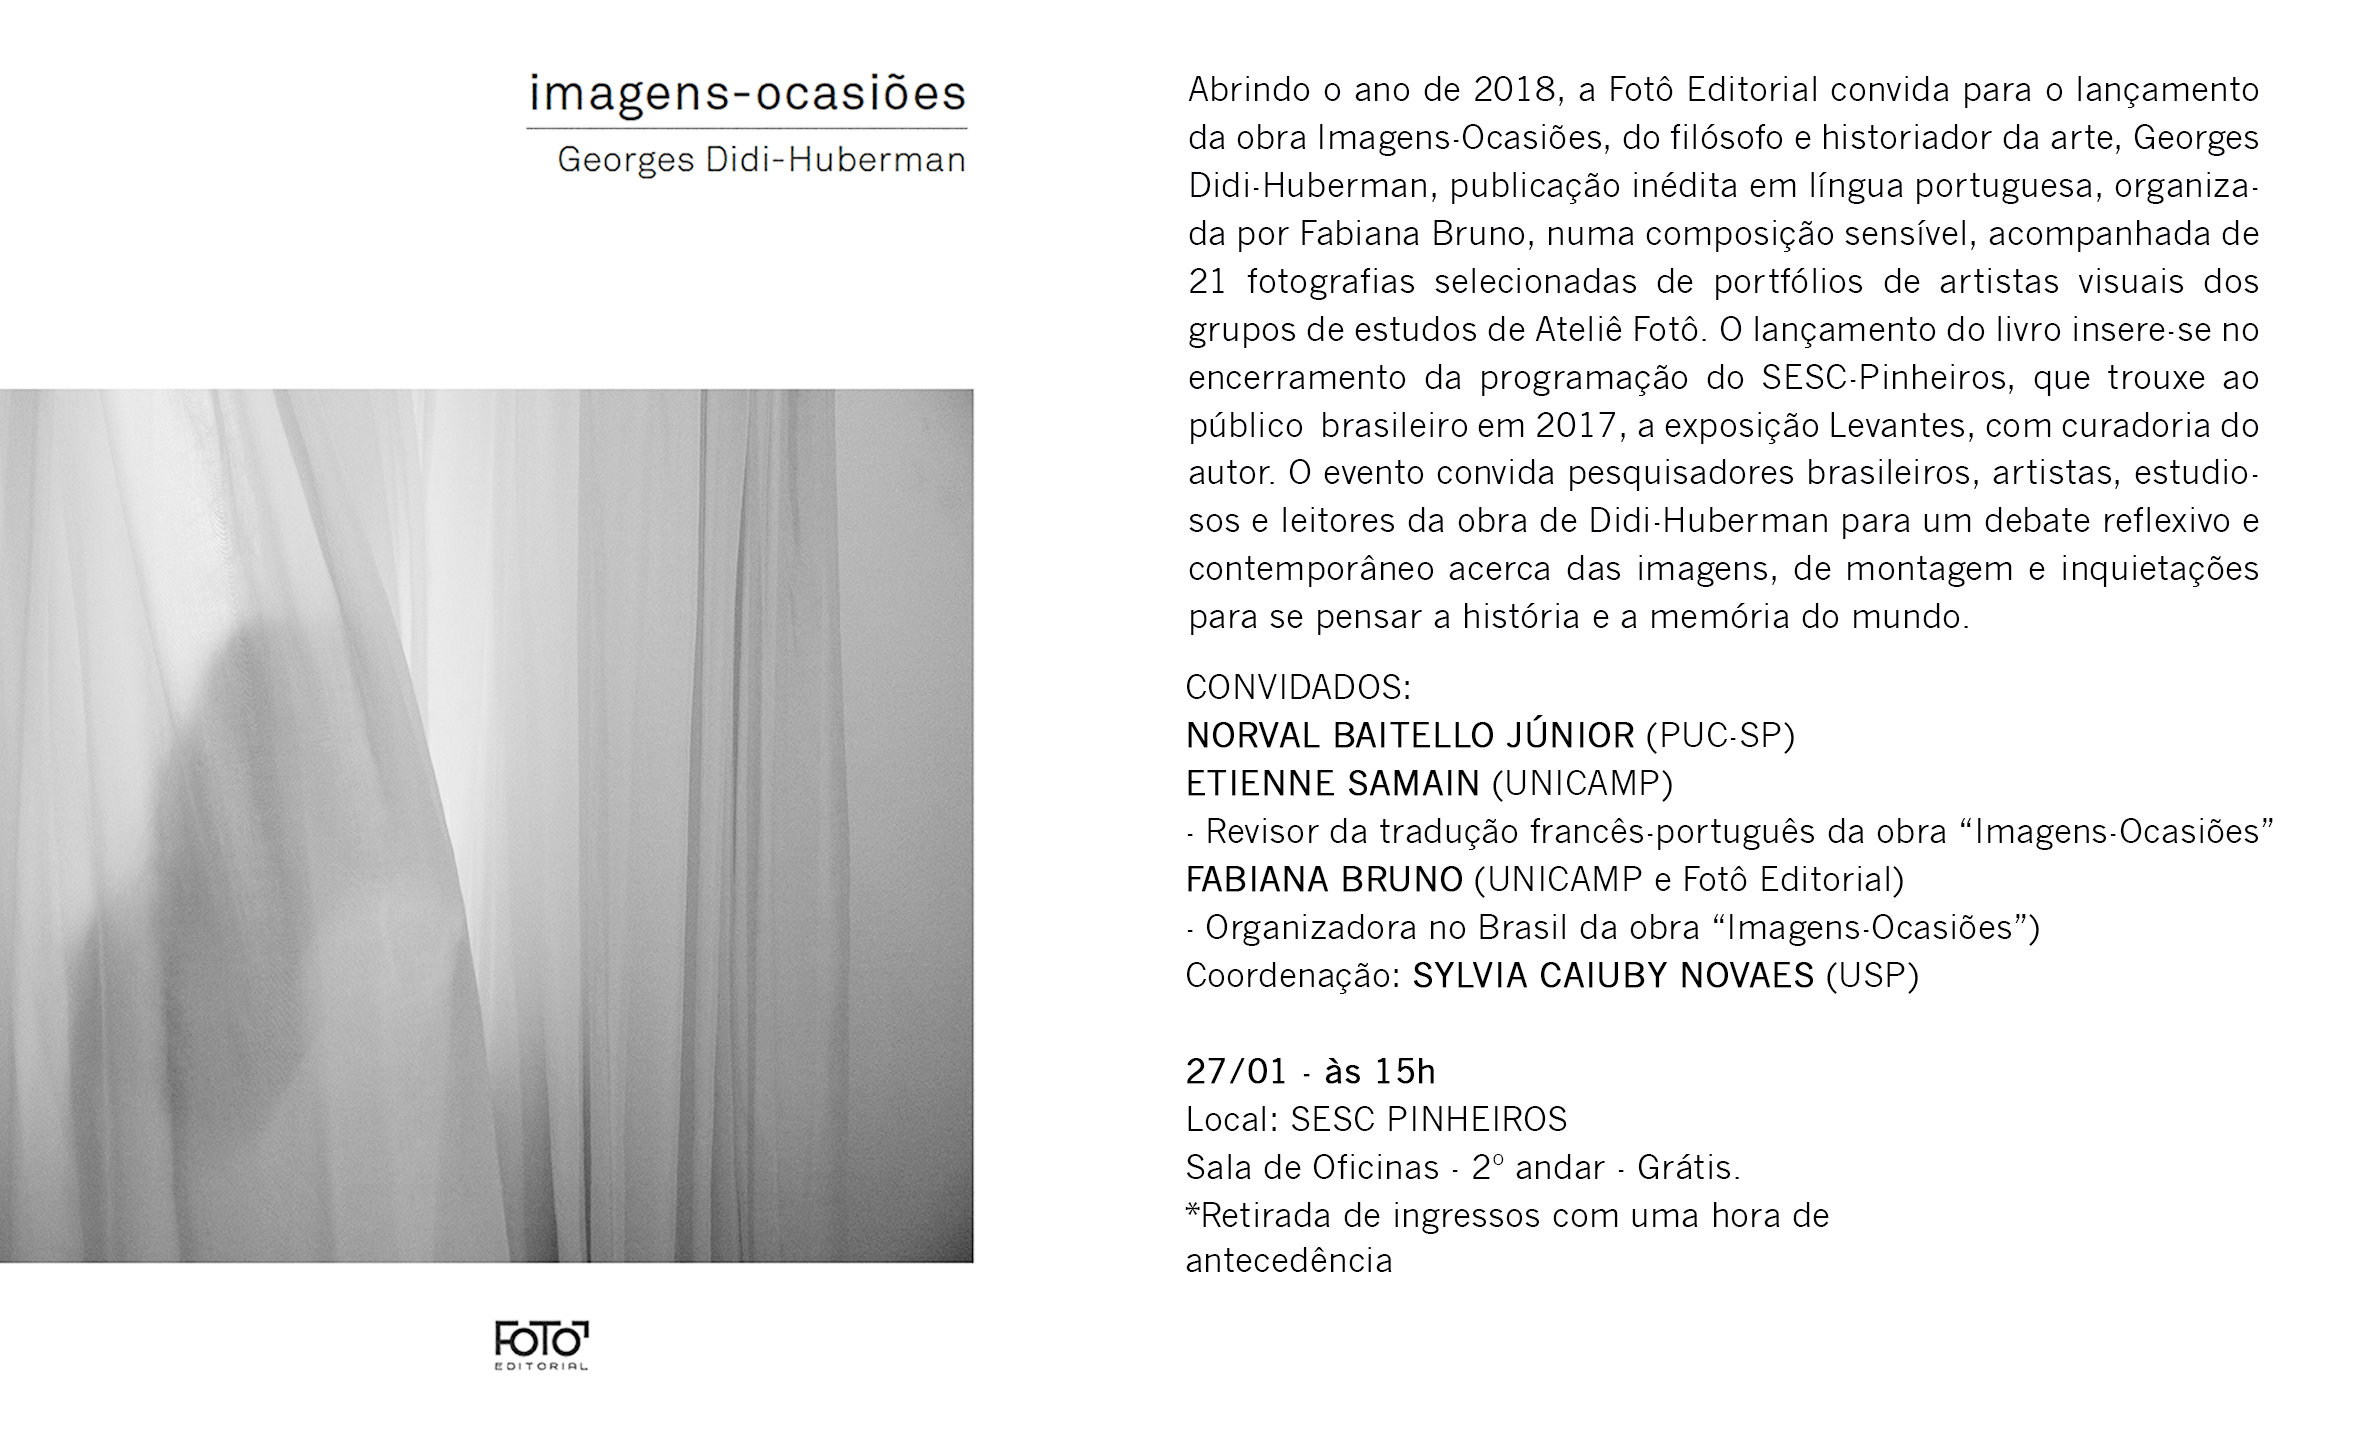 Lançamento do Livro "Imagens-Ocasiões", de Georges Didi-Huberman